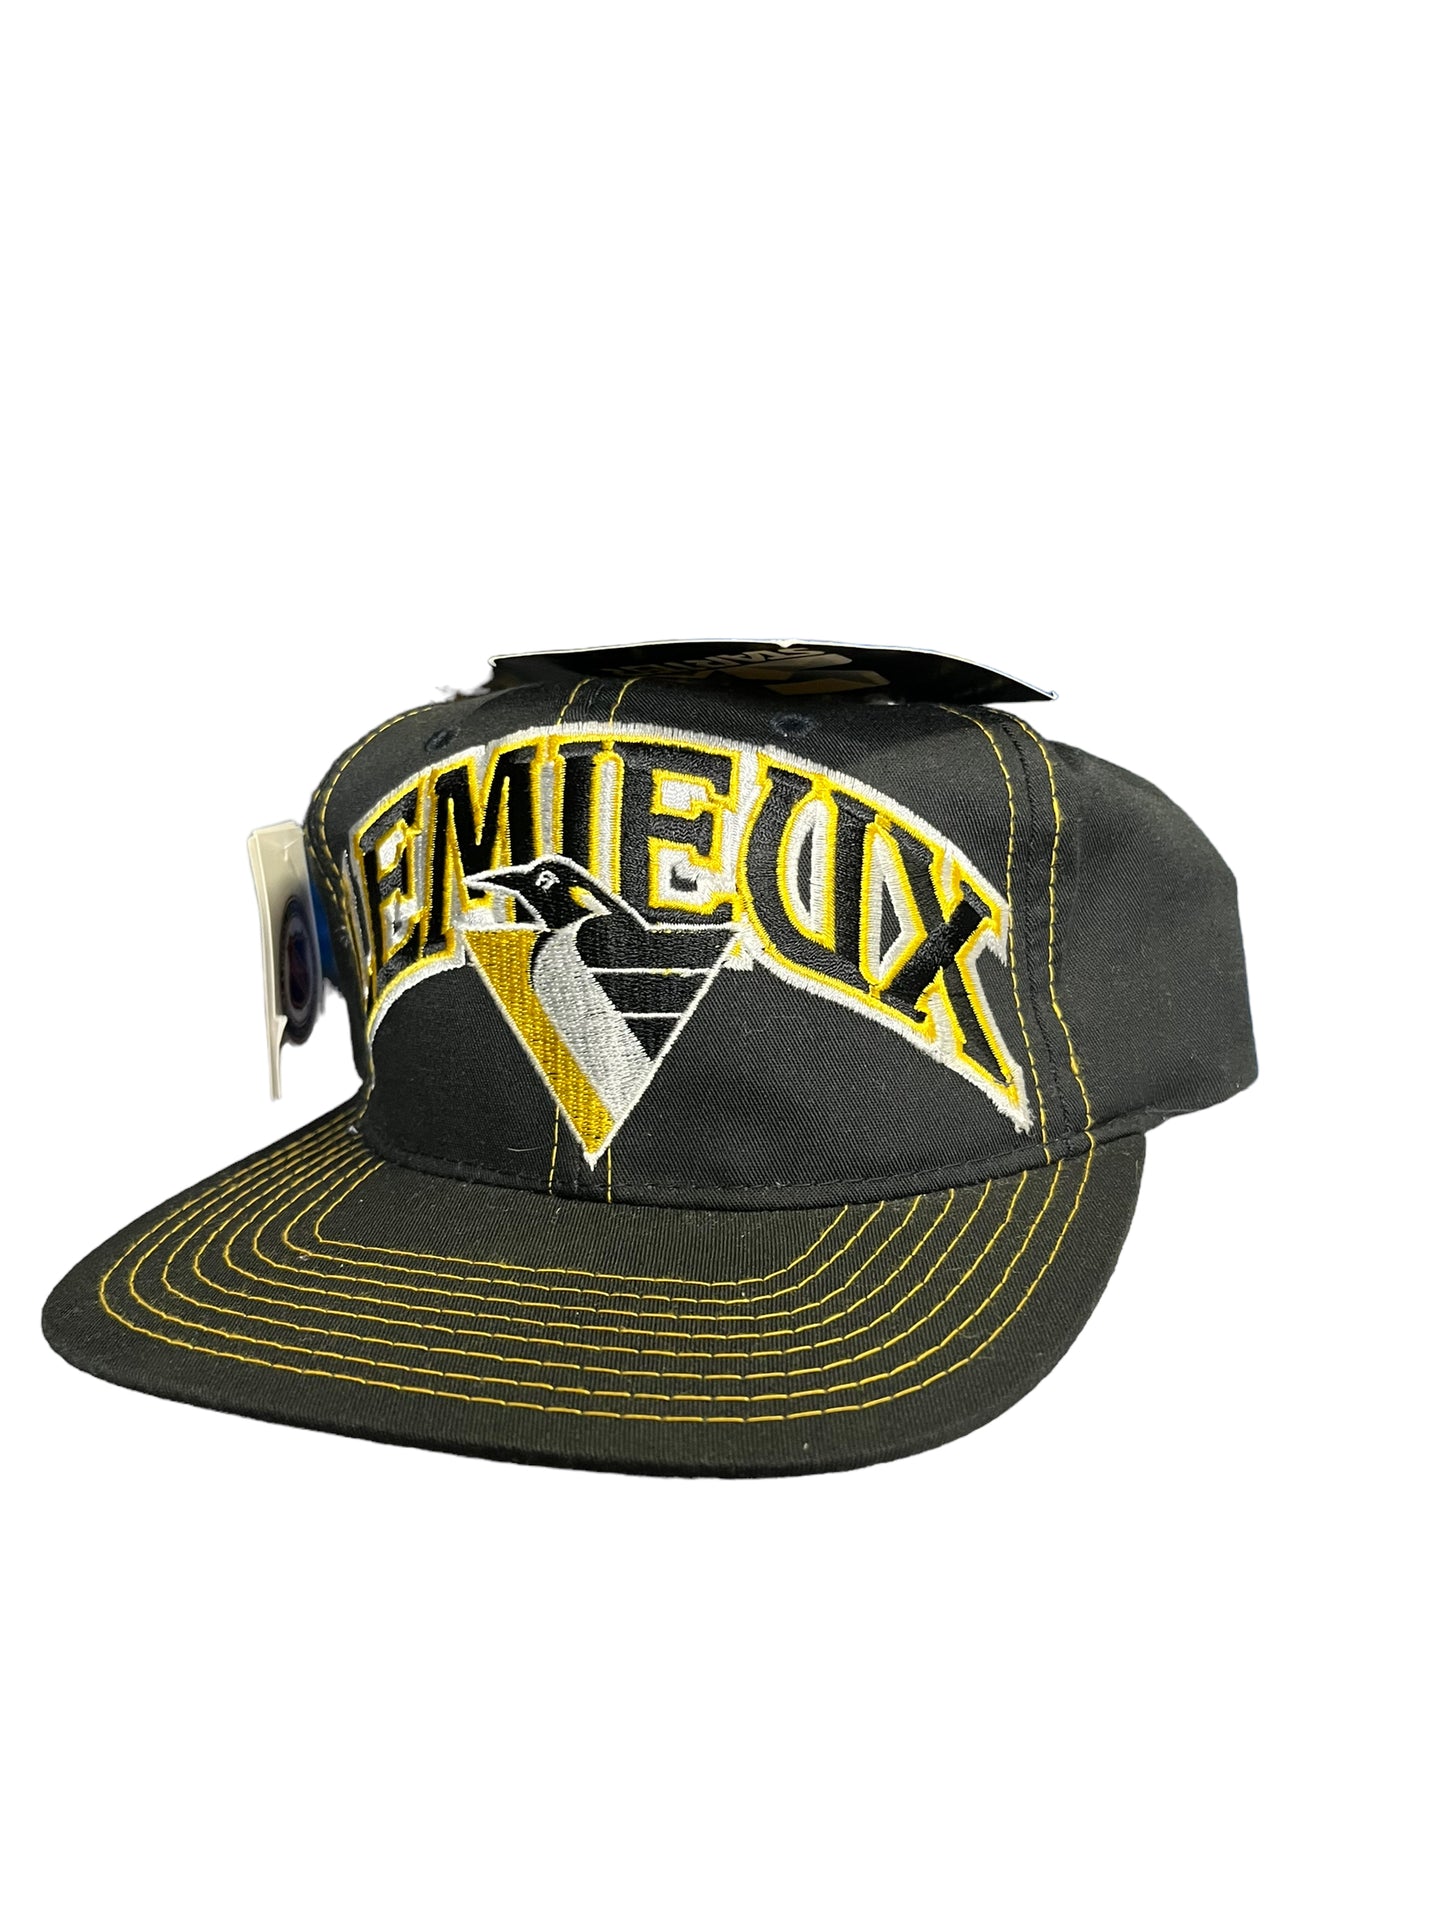 Vintage NEW Lemieux Penguins Starter Snapback Hat